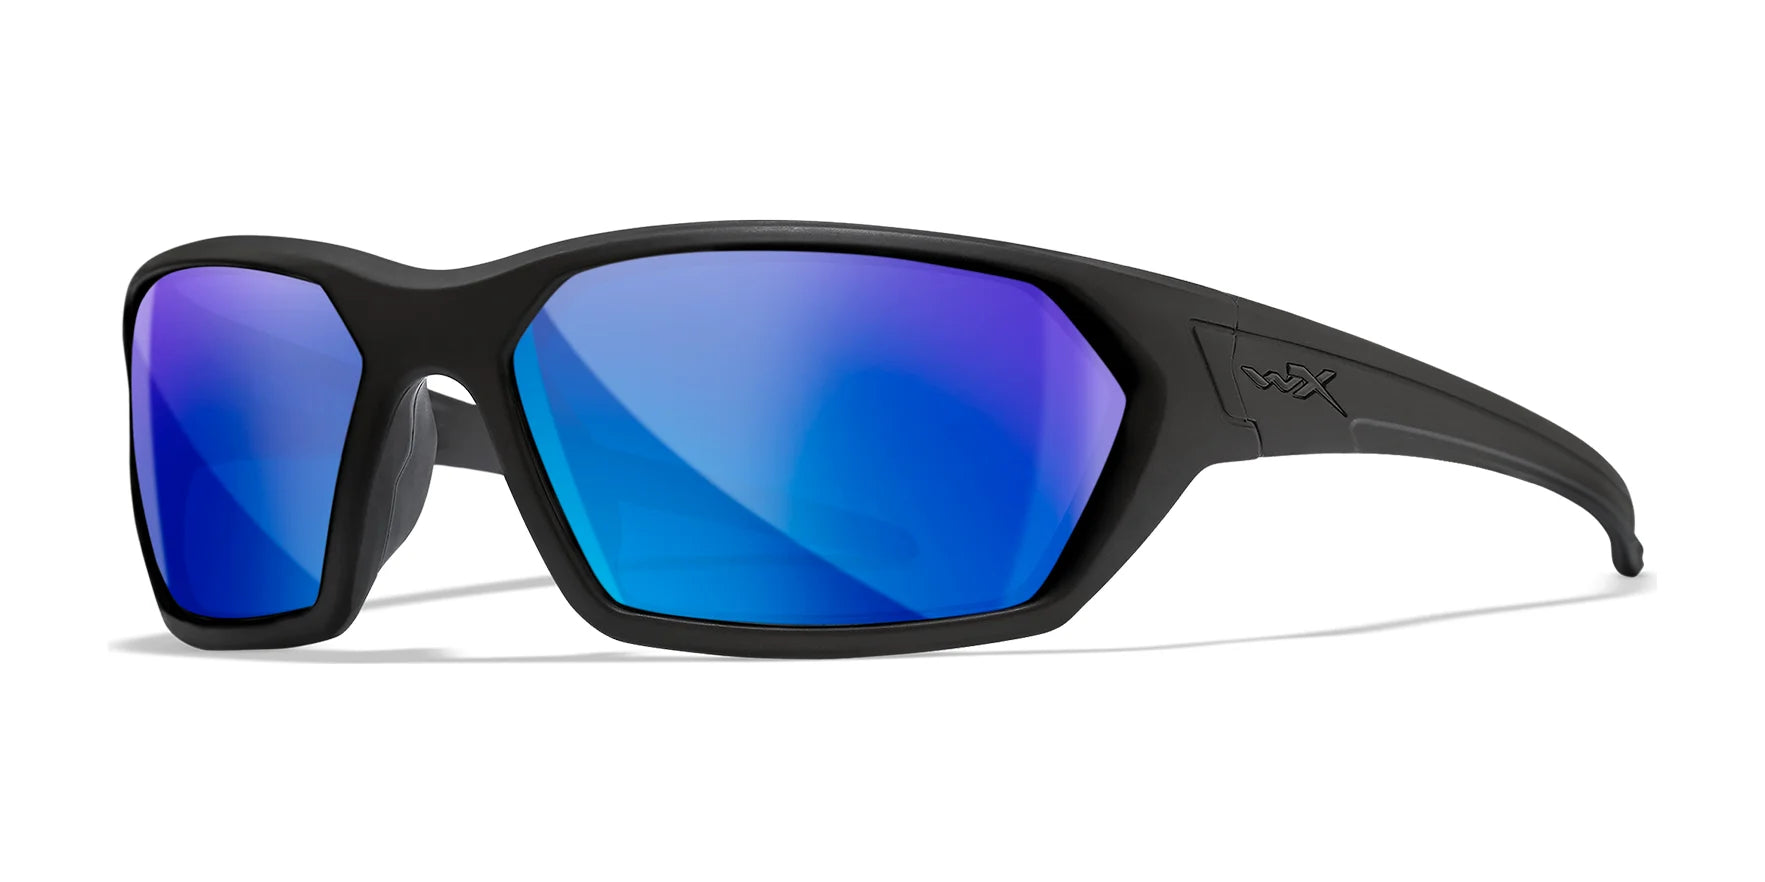 Wiley X IGNITE Sunglasses Matte Black / Polarized Blue Mirror